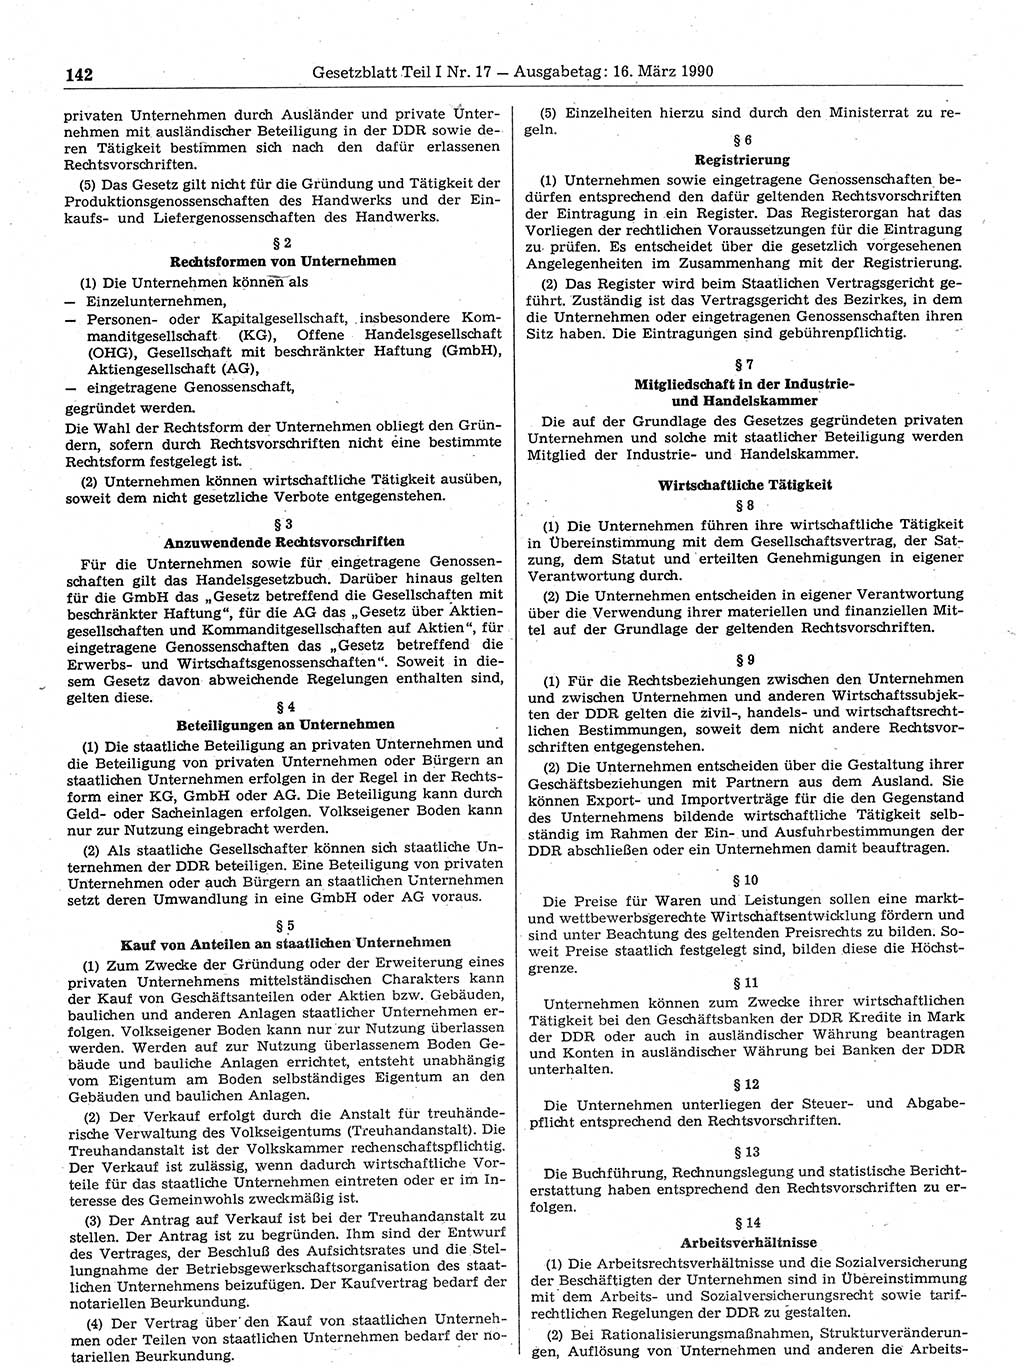 Gesetzblatt (GBl.) der Deutschen Demokratischen Republik (DDR) Teil Ⅰ 1990, Seite 142 (GBl. DDR Ⅰ 1990, S. 142)